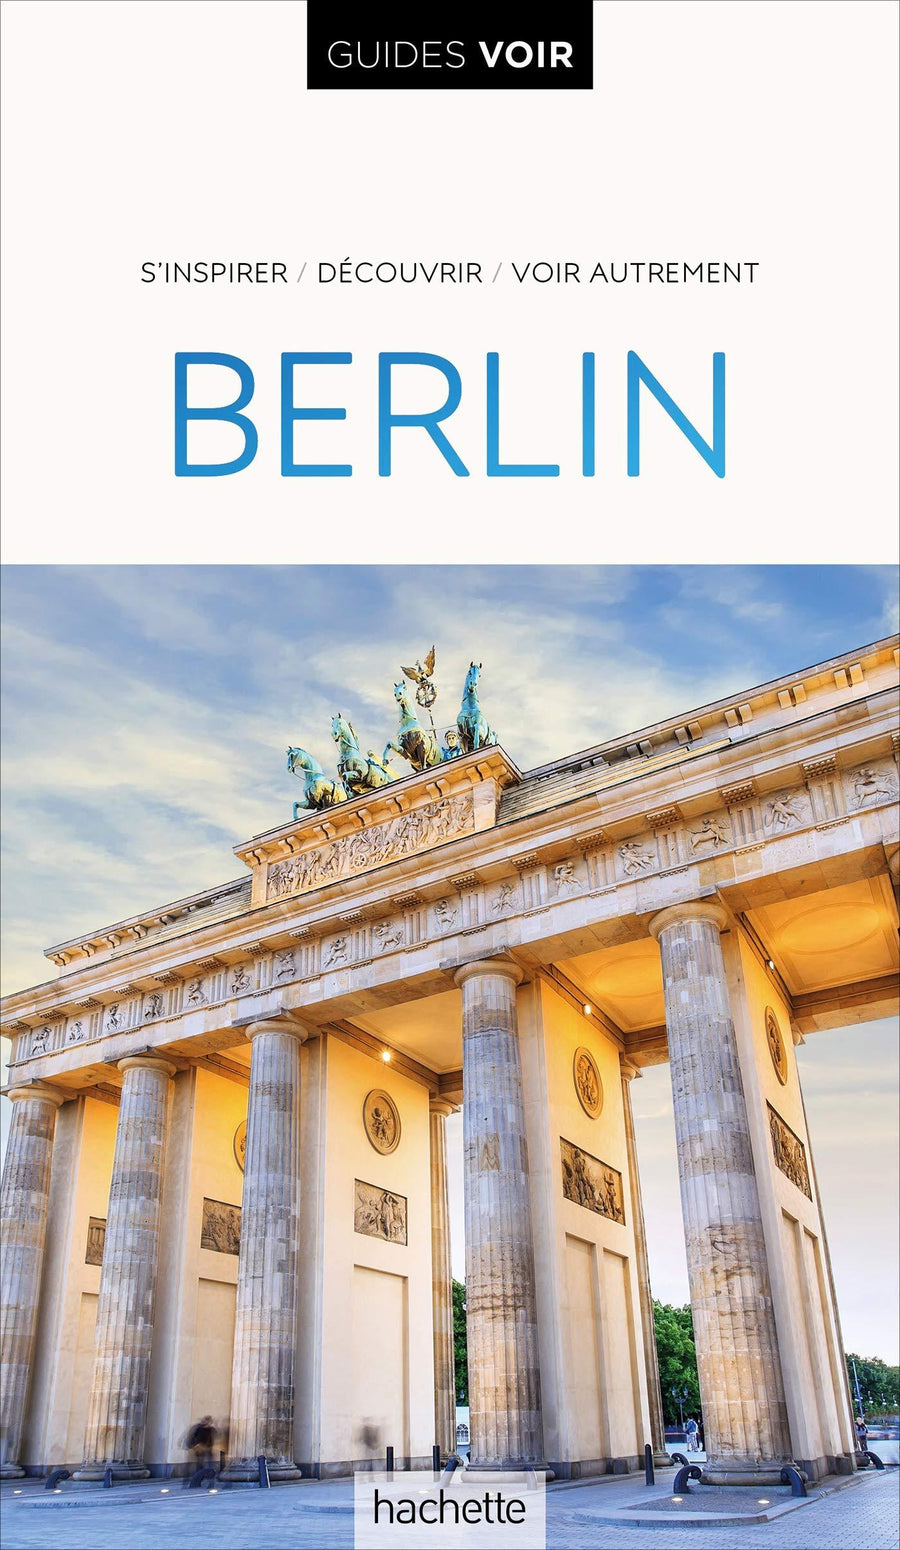 Guide de voyage - Berlin | Guides Voir guide de voyage Guides Voir 